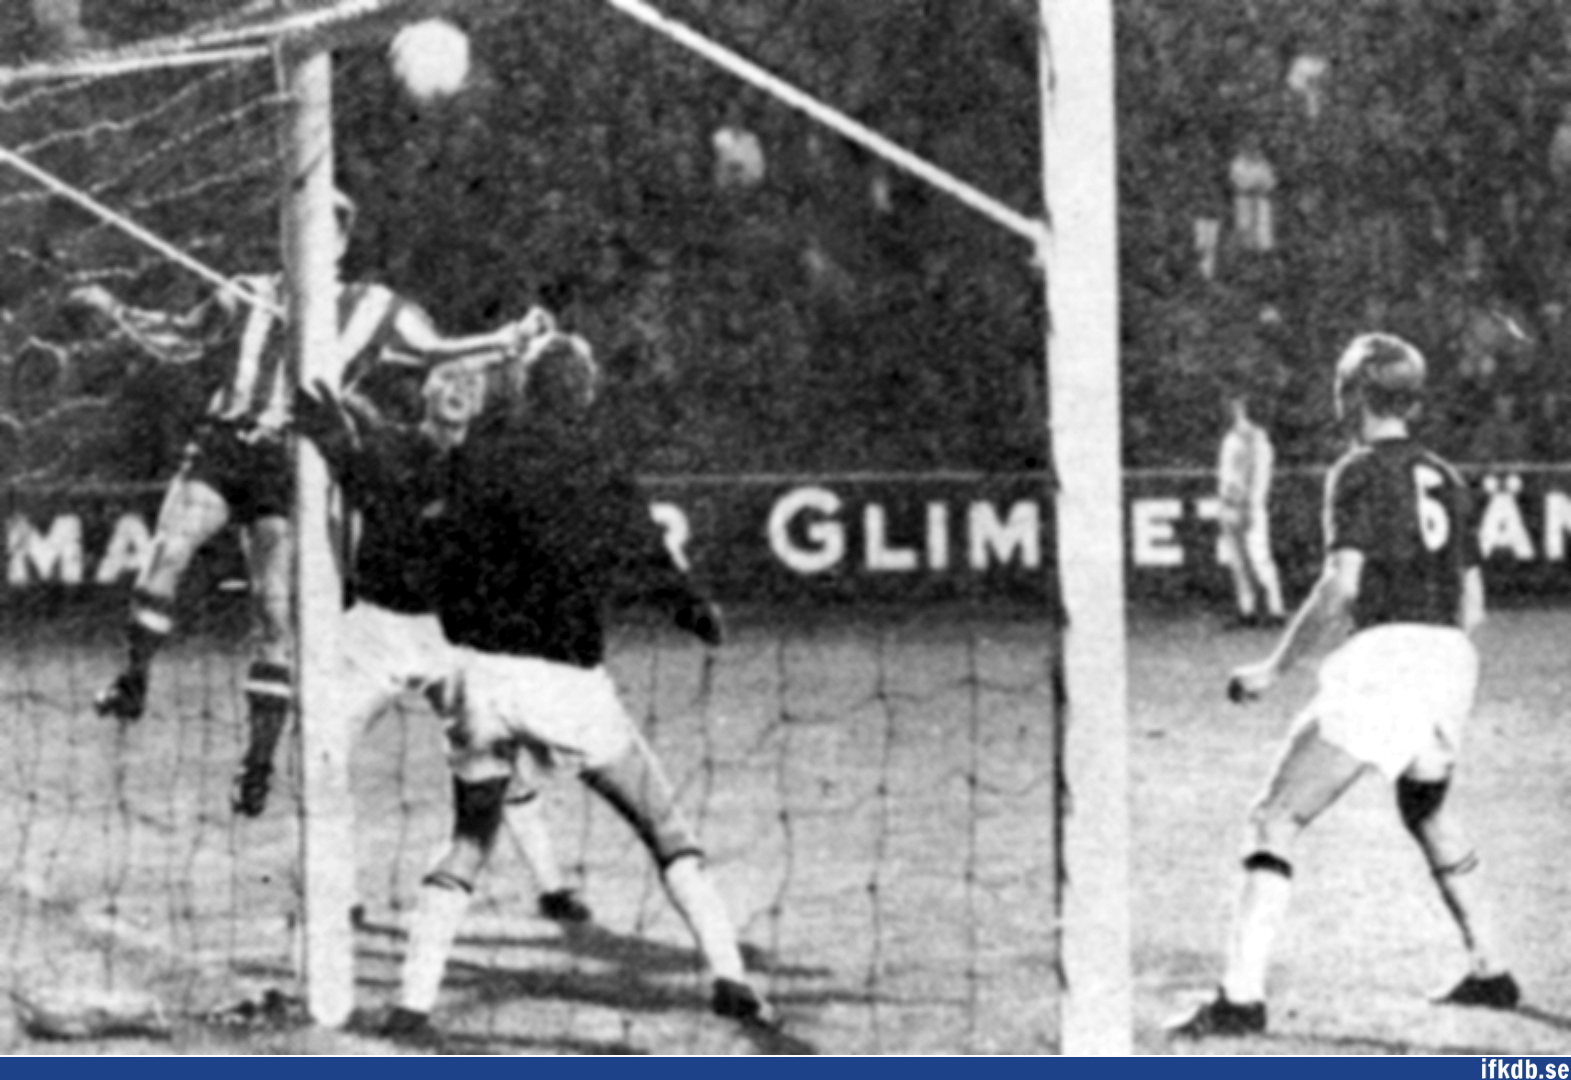 Lennart Wallin (skymd bakom stolpen) nickar in en boll mot målet, som Harry Svensson (utanför bild) snart skall göra mål på.